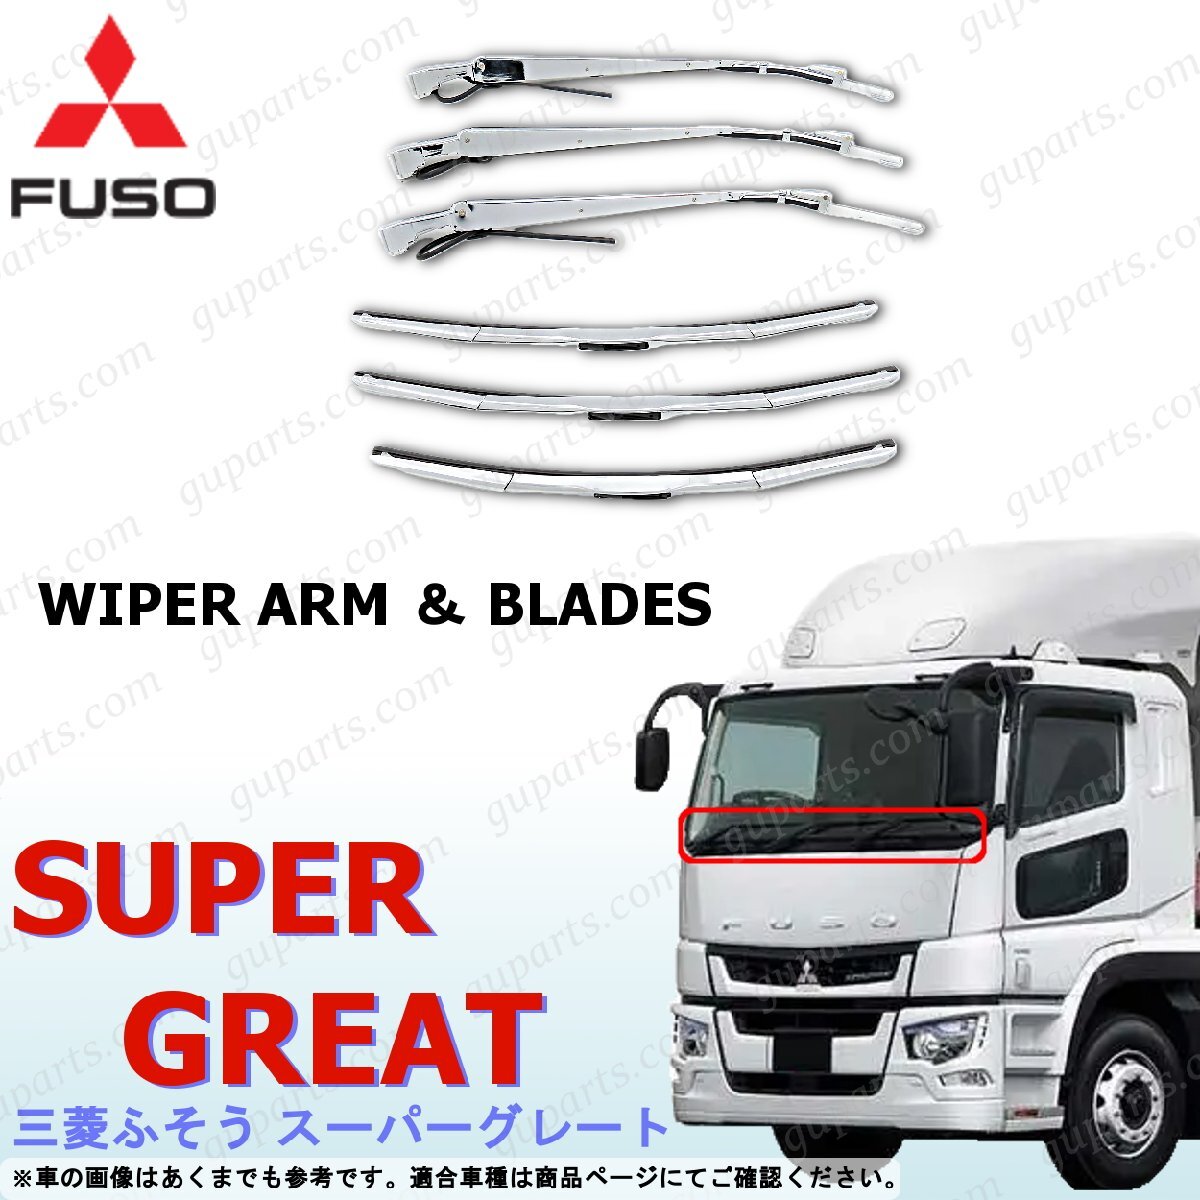  Fuso Super Great wiper arm wiper blade set chrome plating NEW Super Great 17 Super Great 